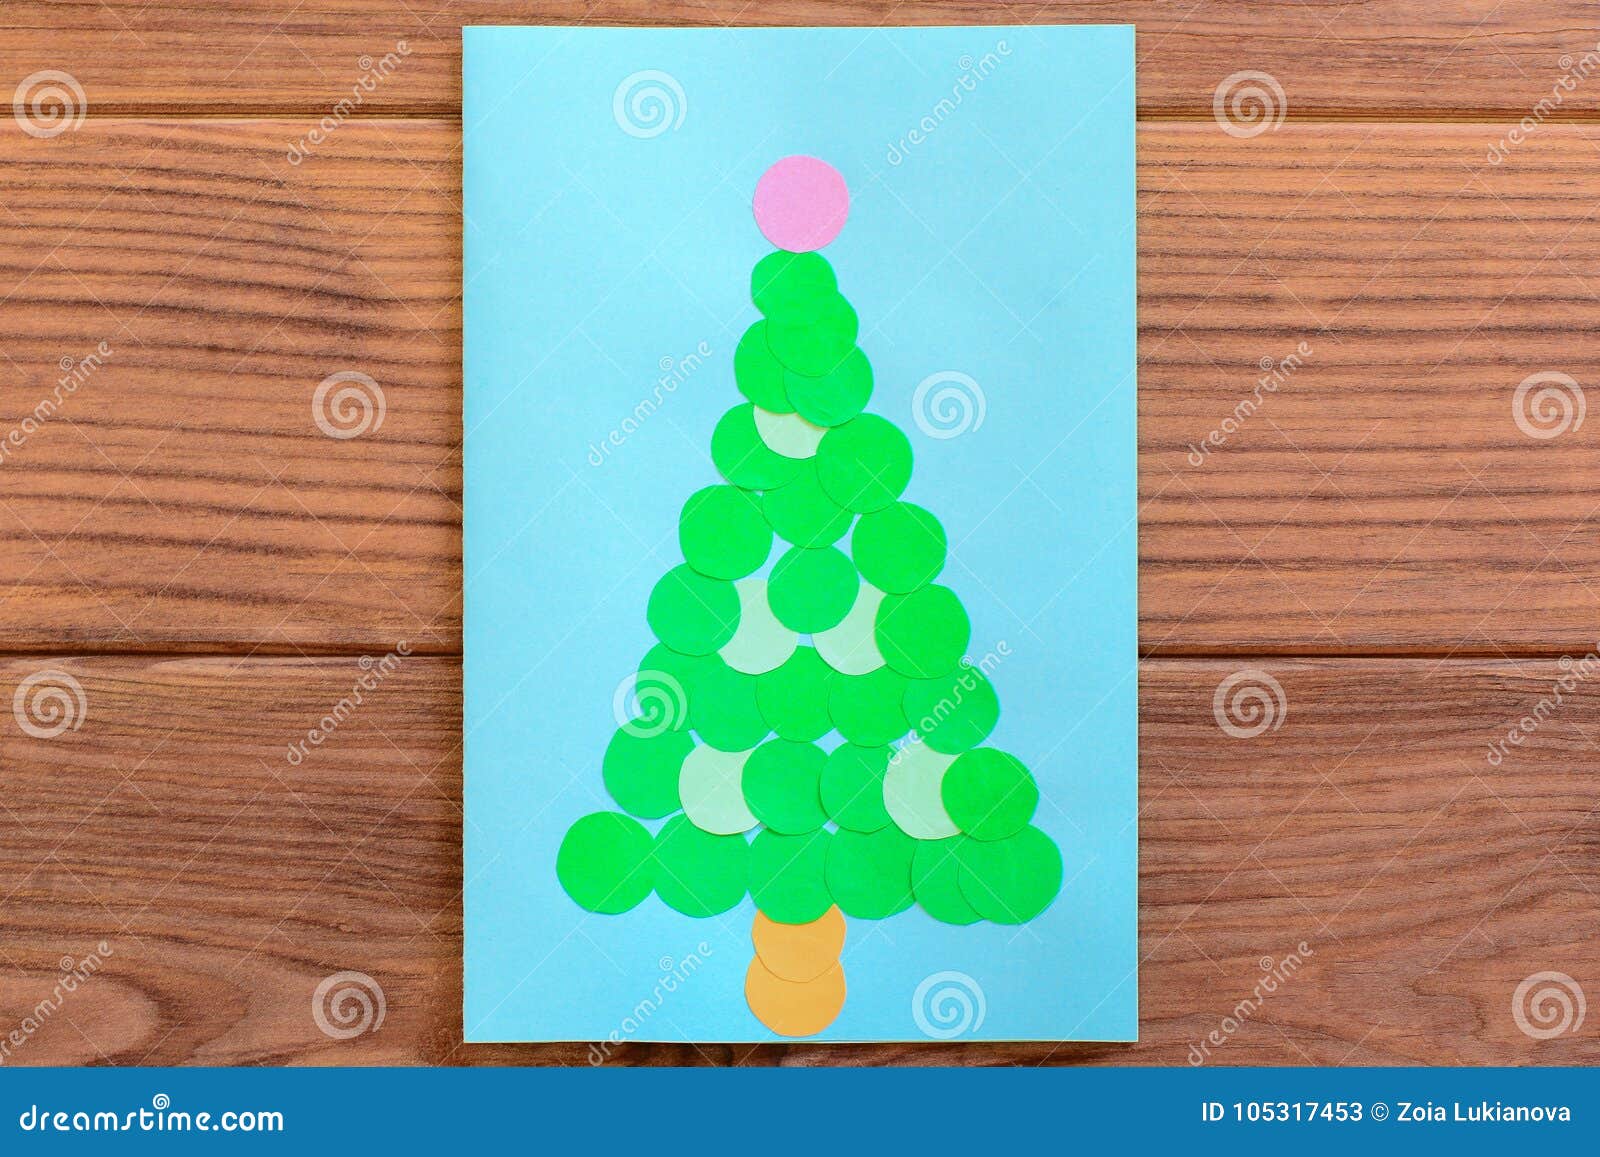 Cartão Da árvore De Natal Cartão Do Natal Isolado Em Uma Tabela De Madeira  Coisa Fácil a Fazer Com Papel E Tesouras Imagem de Stock - Imagem de  elegante, desenvolvimento: 105317453